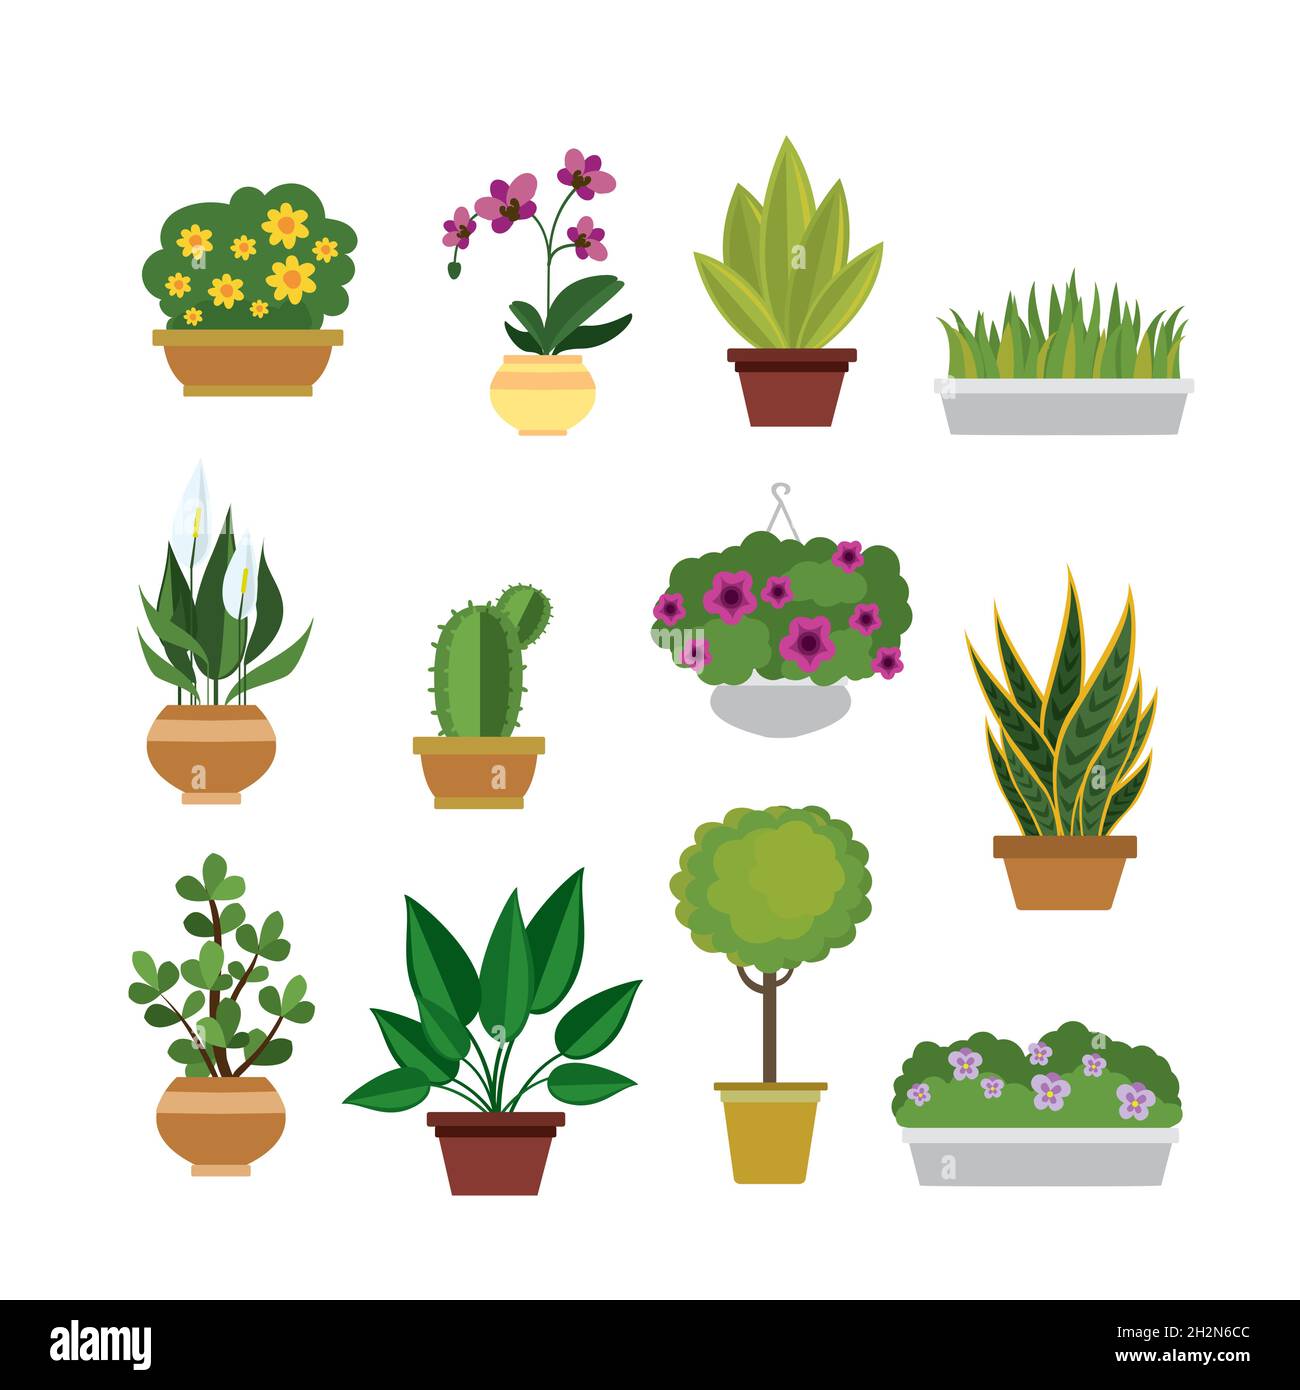 Haus Blumen und Pflanzen in Töpfen, Satz von Cartoon Natur Symbole oder  Elemente, isoliert auf weißem Hintergrund, flache Vektor-Illustration  Stock-Vektorgrafik - Alamy